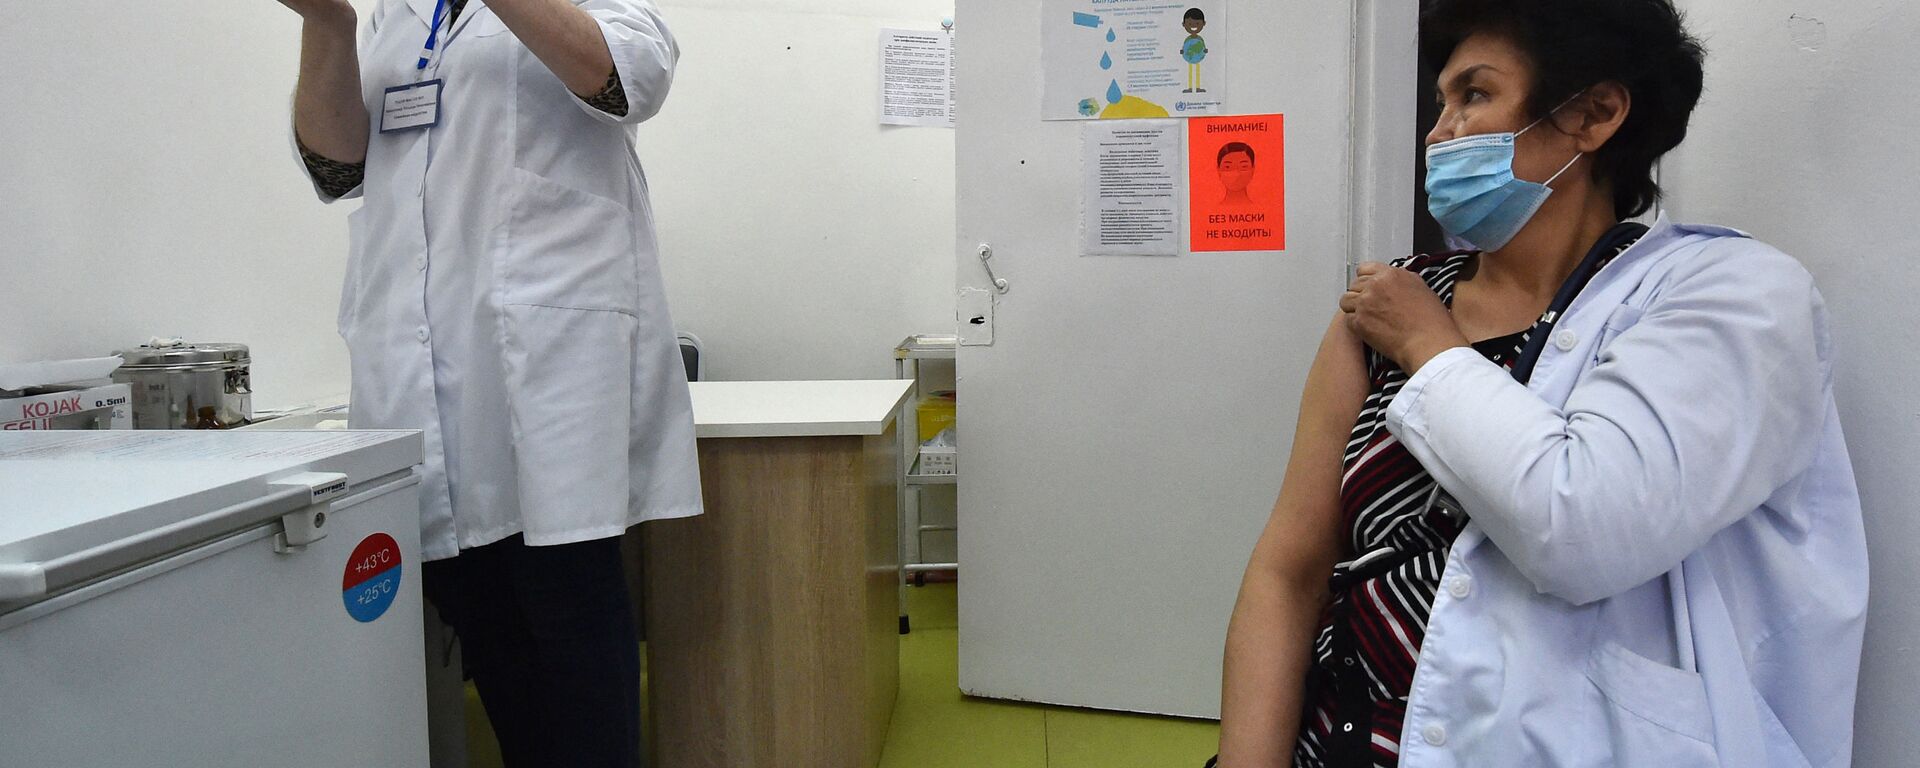 Медицинский работник готовит дозу вакцины Sinopharm против COVID-19 в Бишкеке - Sputnik Кыргызстан, 1920, 06.04.2021